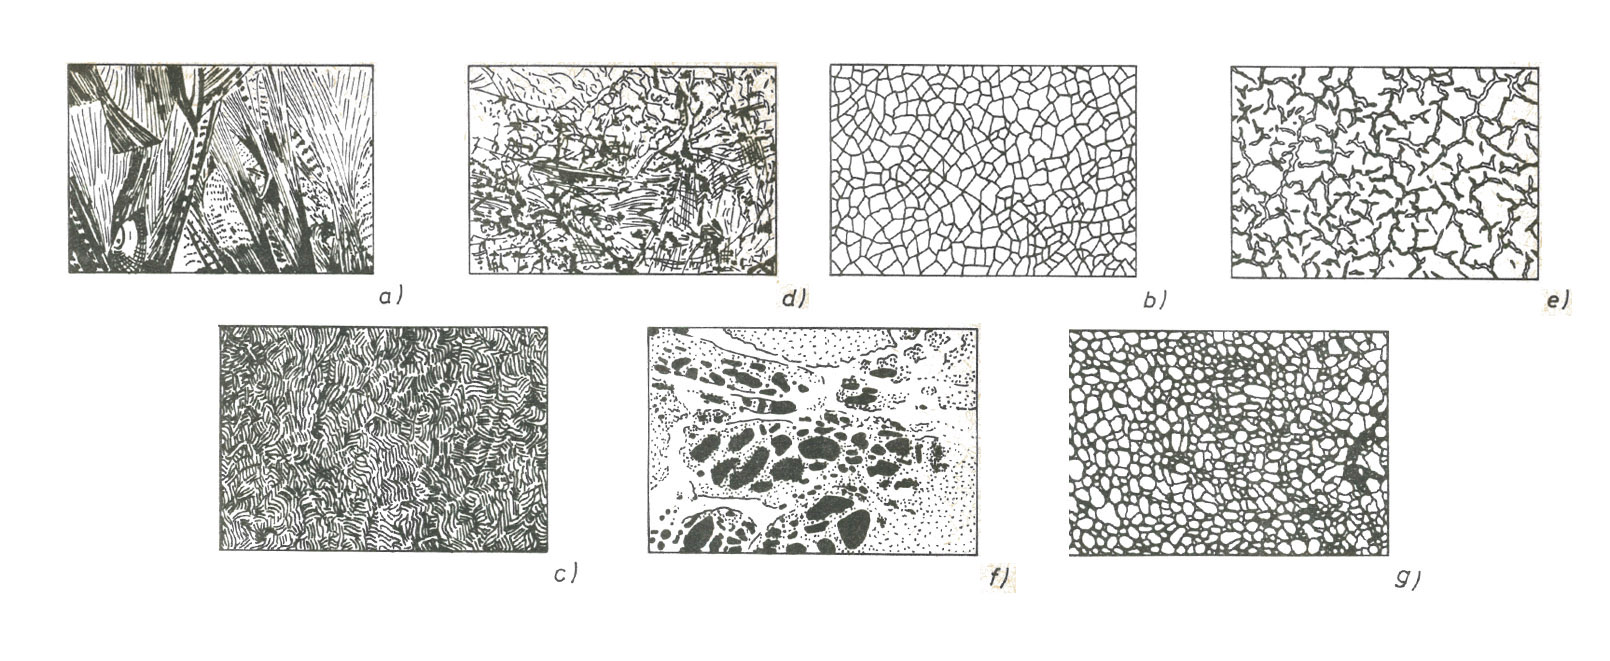 Különböző lakkmintázatok. a) kristálylakk; b) jégviráglakk; c) ráncos lakk; d) szövedékes lakk; e) repedezett lakk; f) márványlakk; g) kalapácslakk